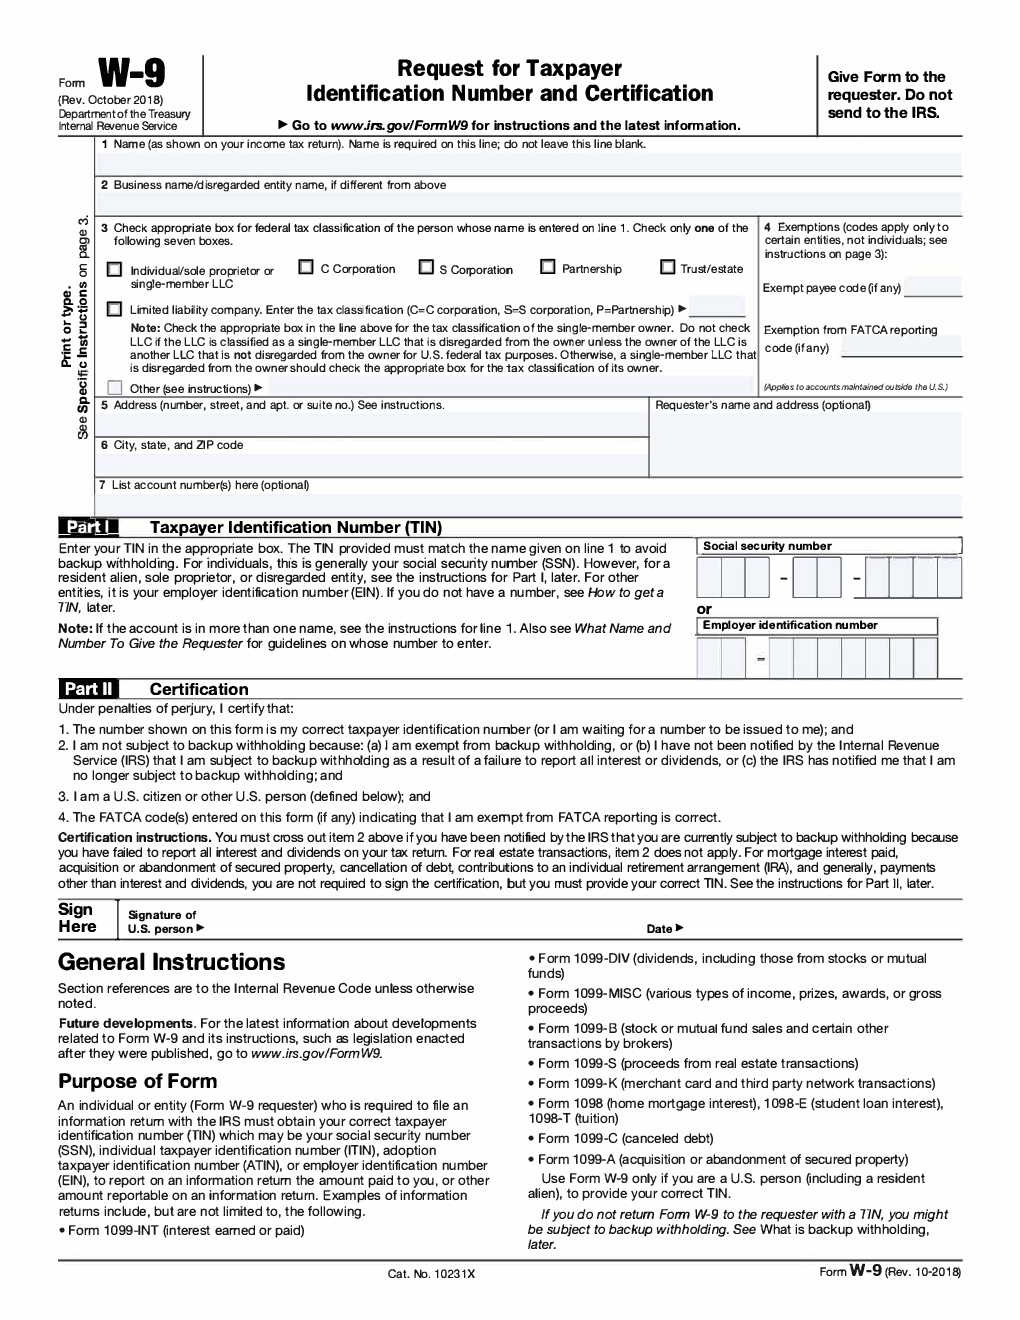 IRS W-9 Form